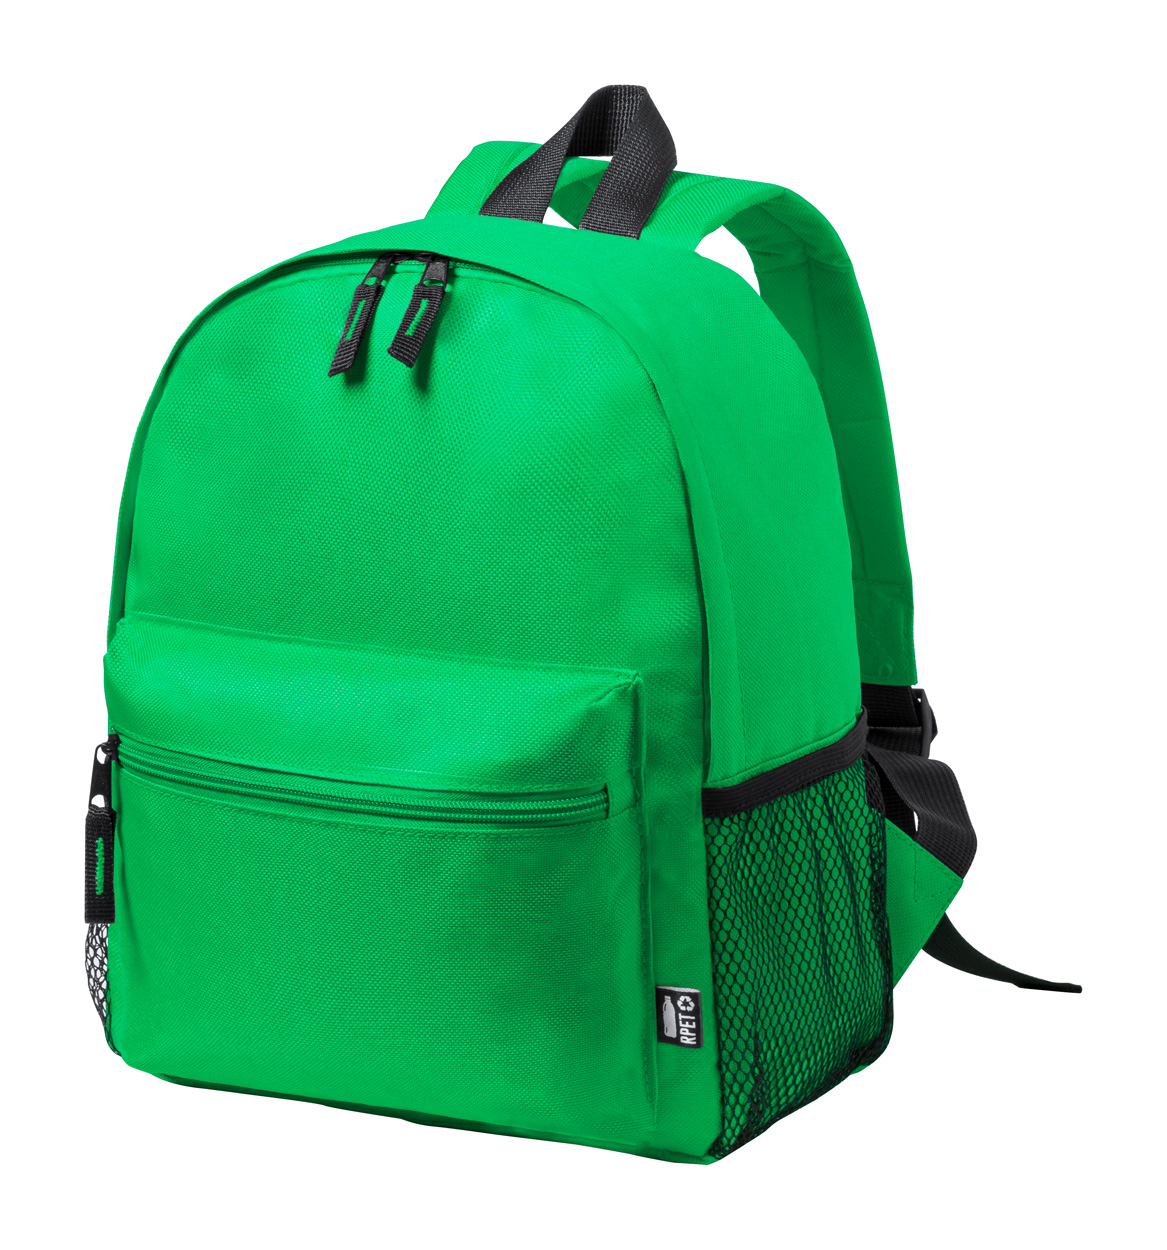 Maggie RPET-Rucksack für Kinder - Grün